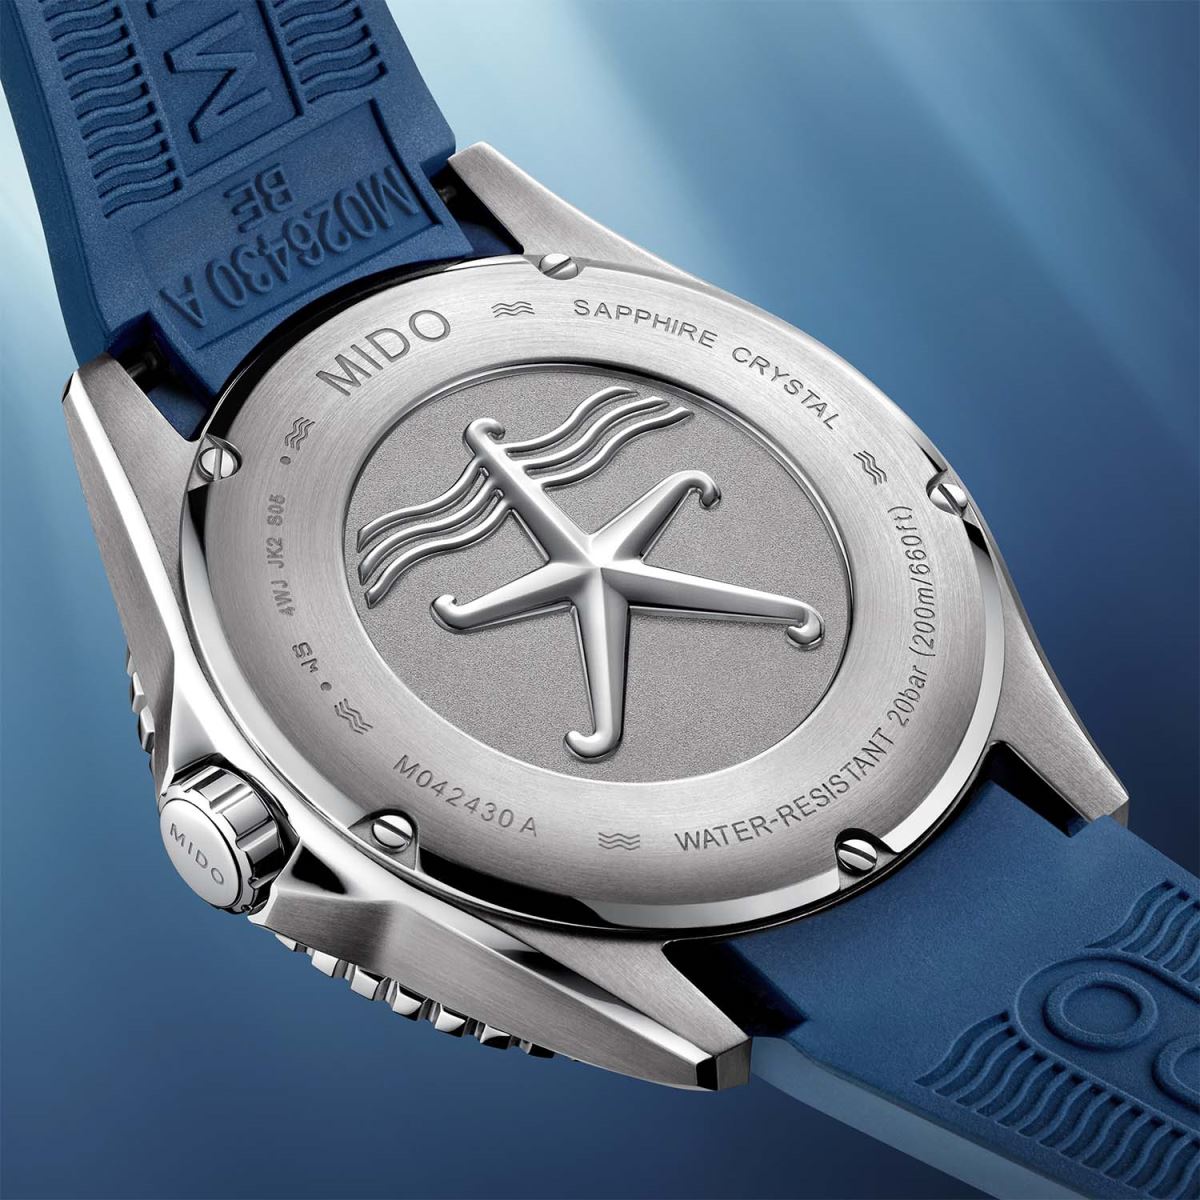 Mido cho ra mắt mẫu đồng hồ lặn Ocean Star 200C Blue mới